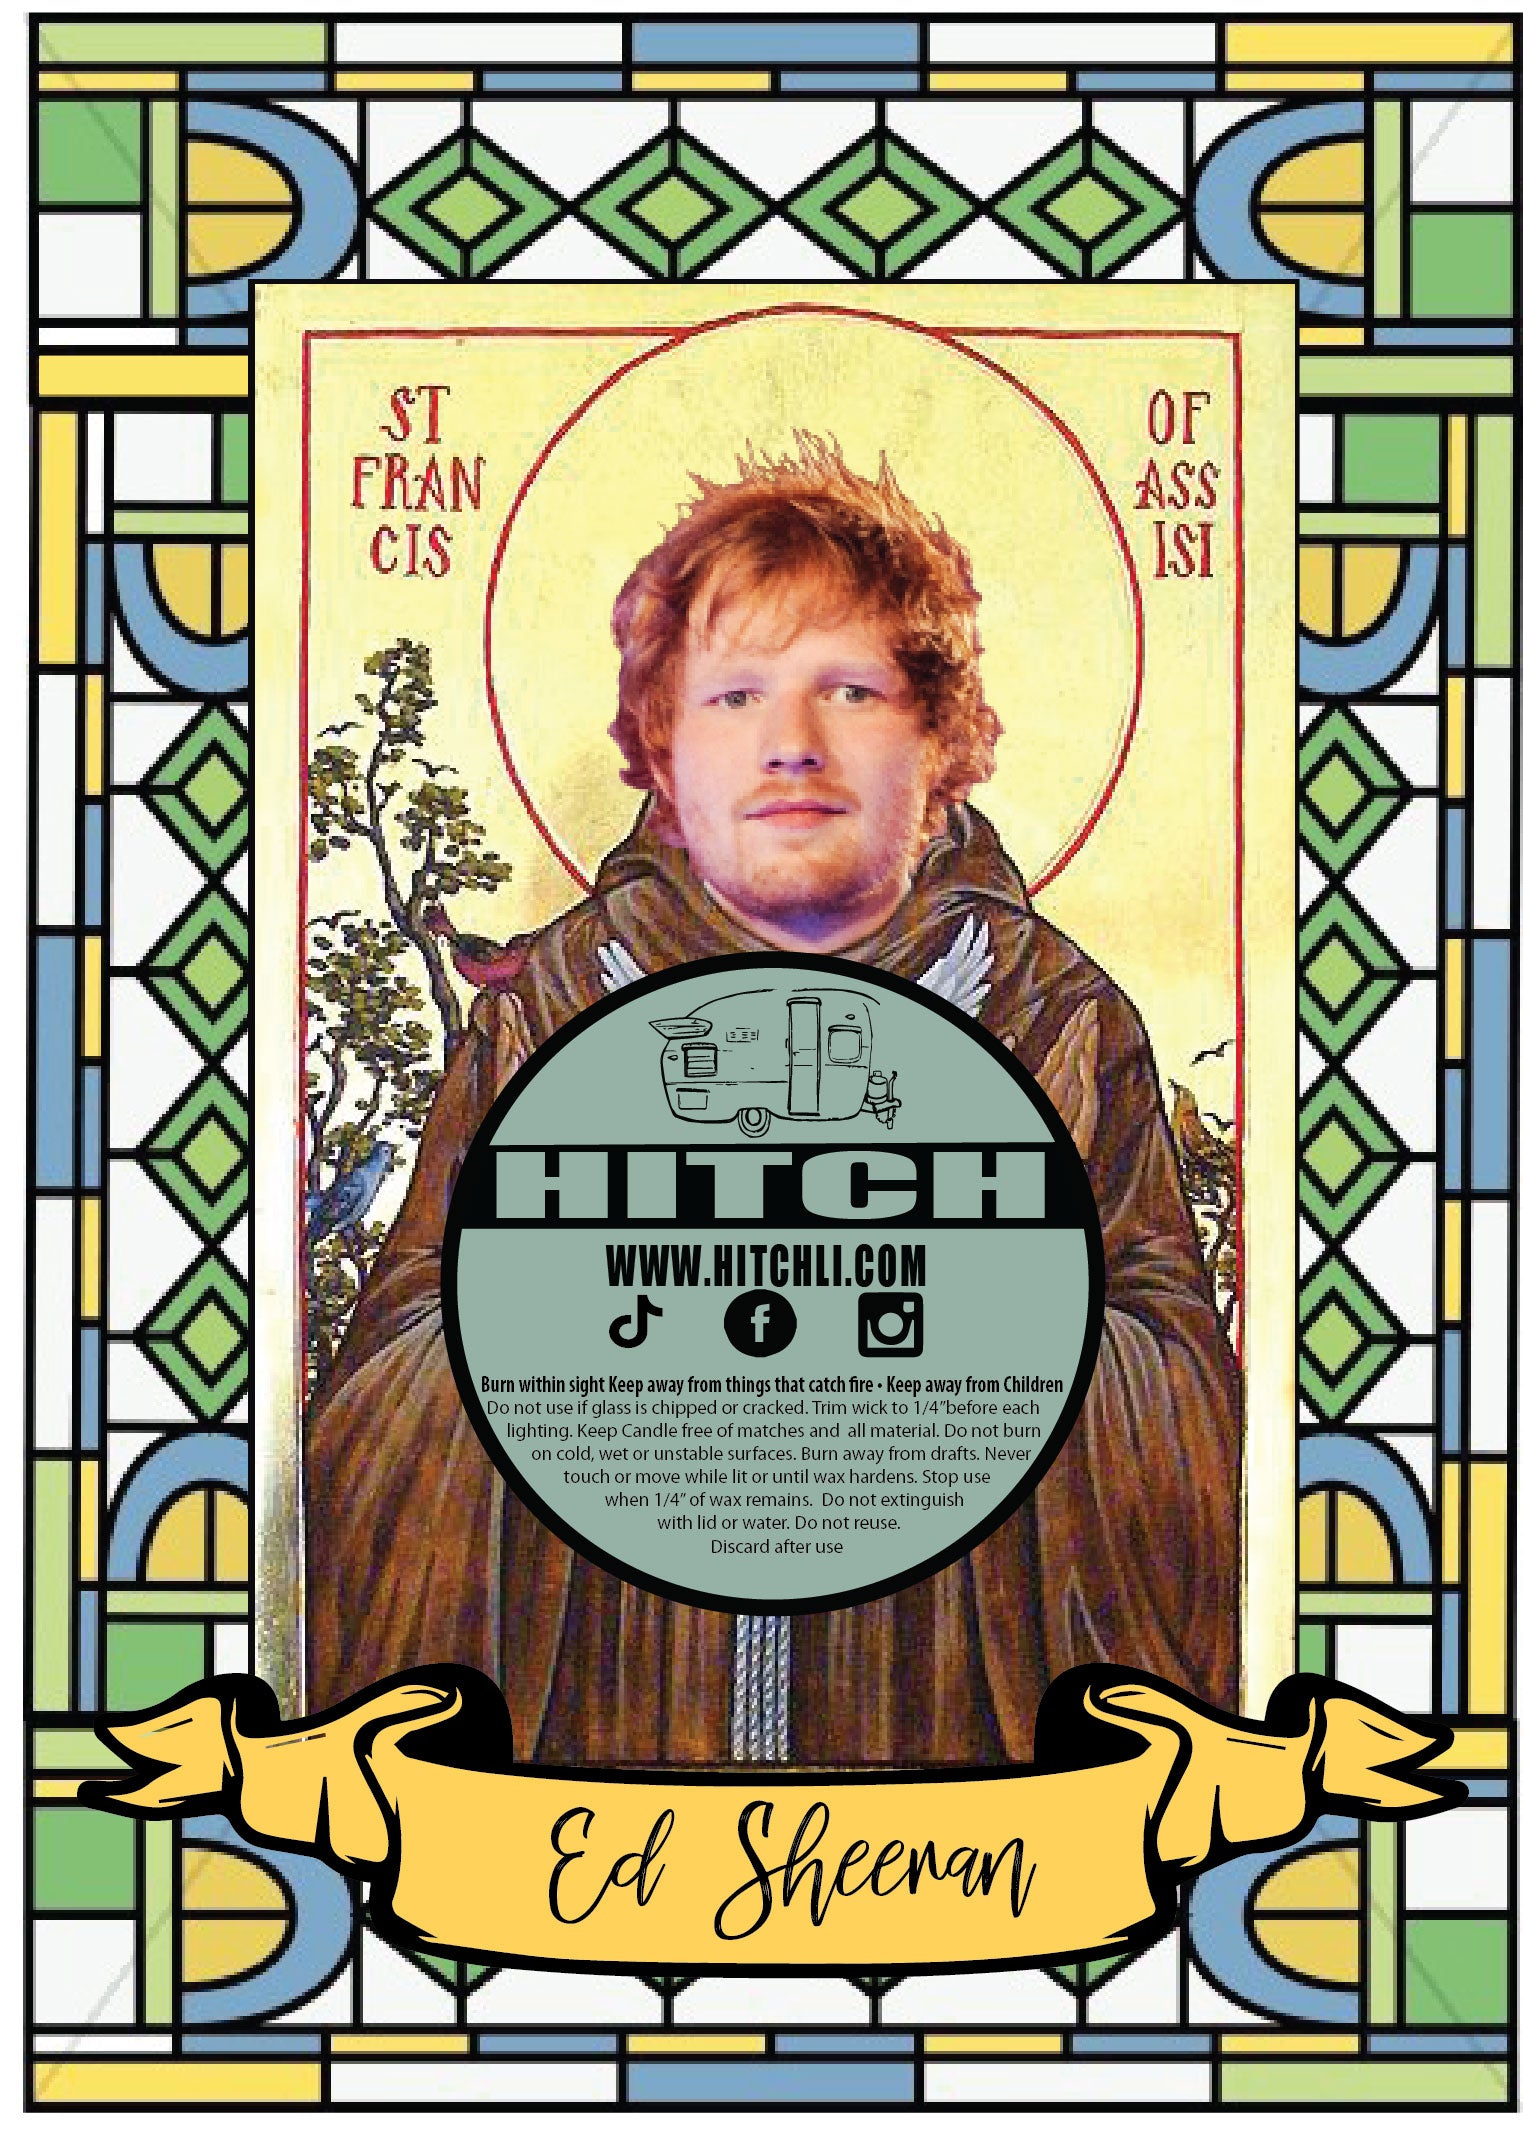 Ed Sheeran Original Prayer Candle